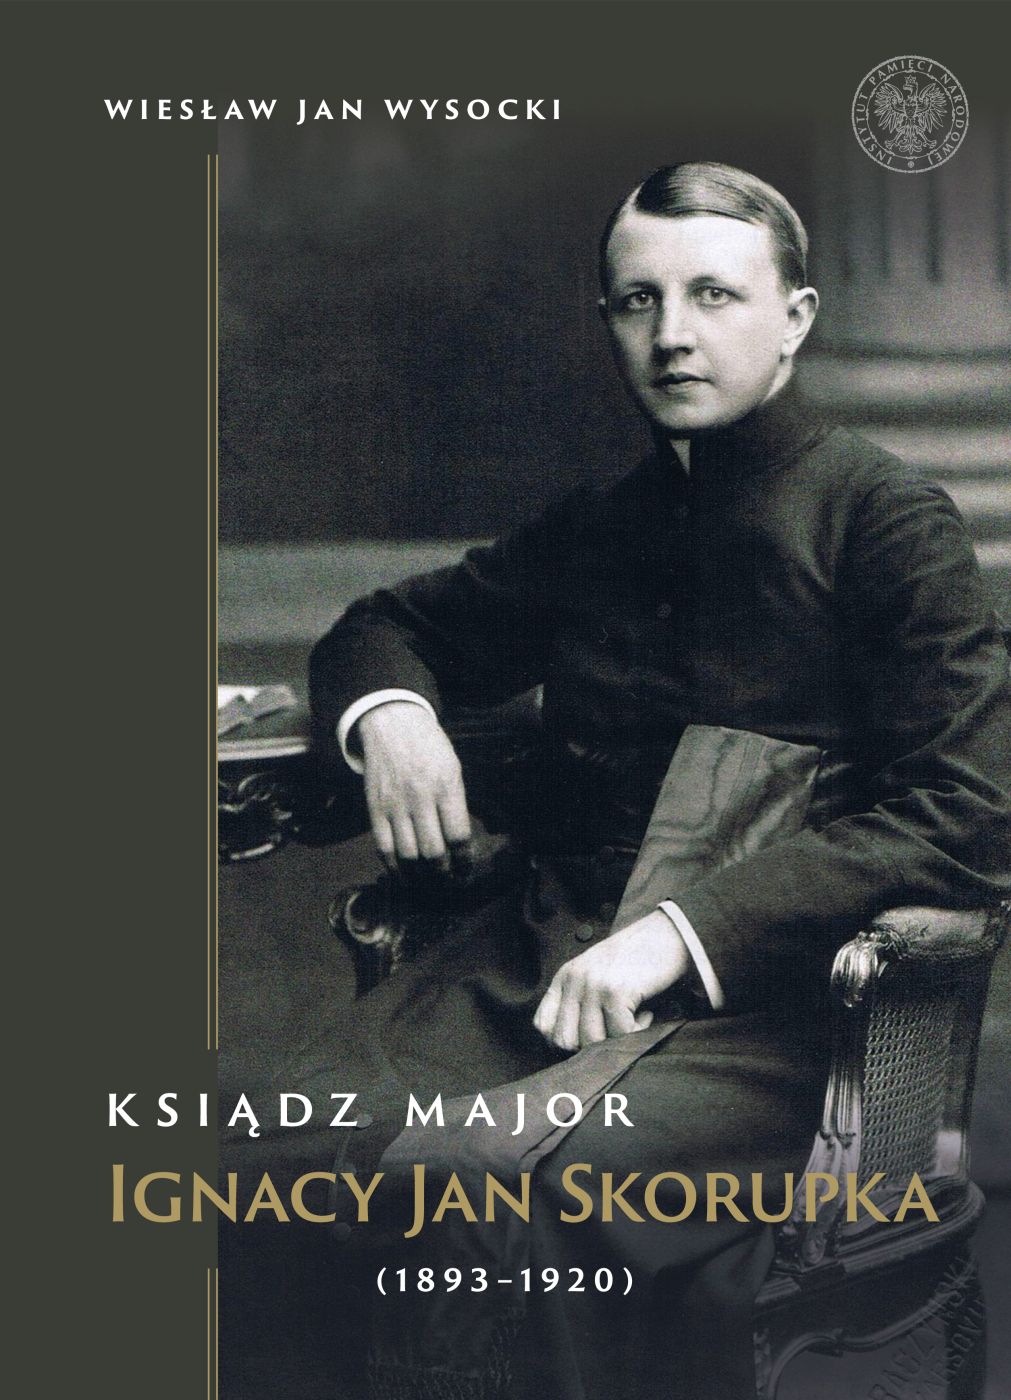 Ksiądz major Ignacy Jan Skorupka (1893-1920)(W.J.Wysocki)